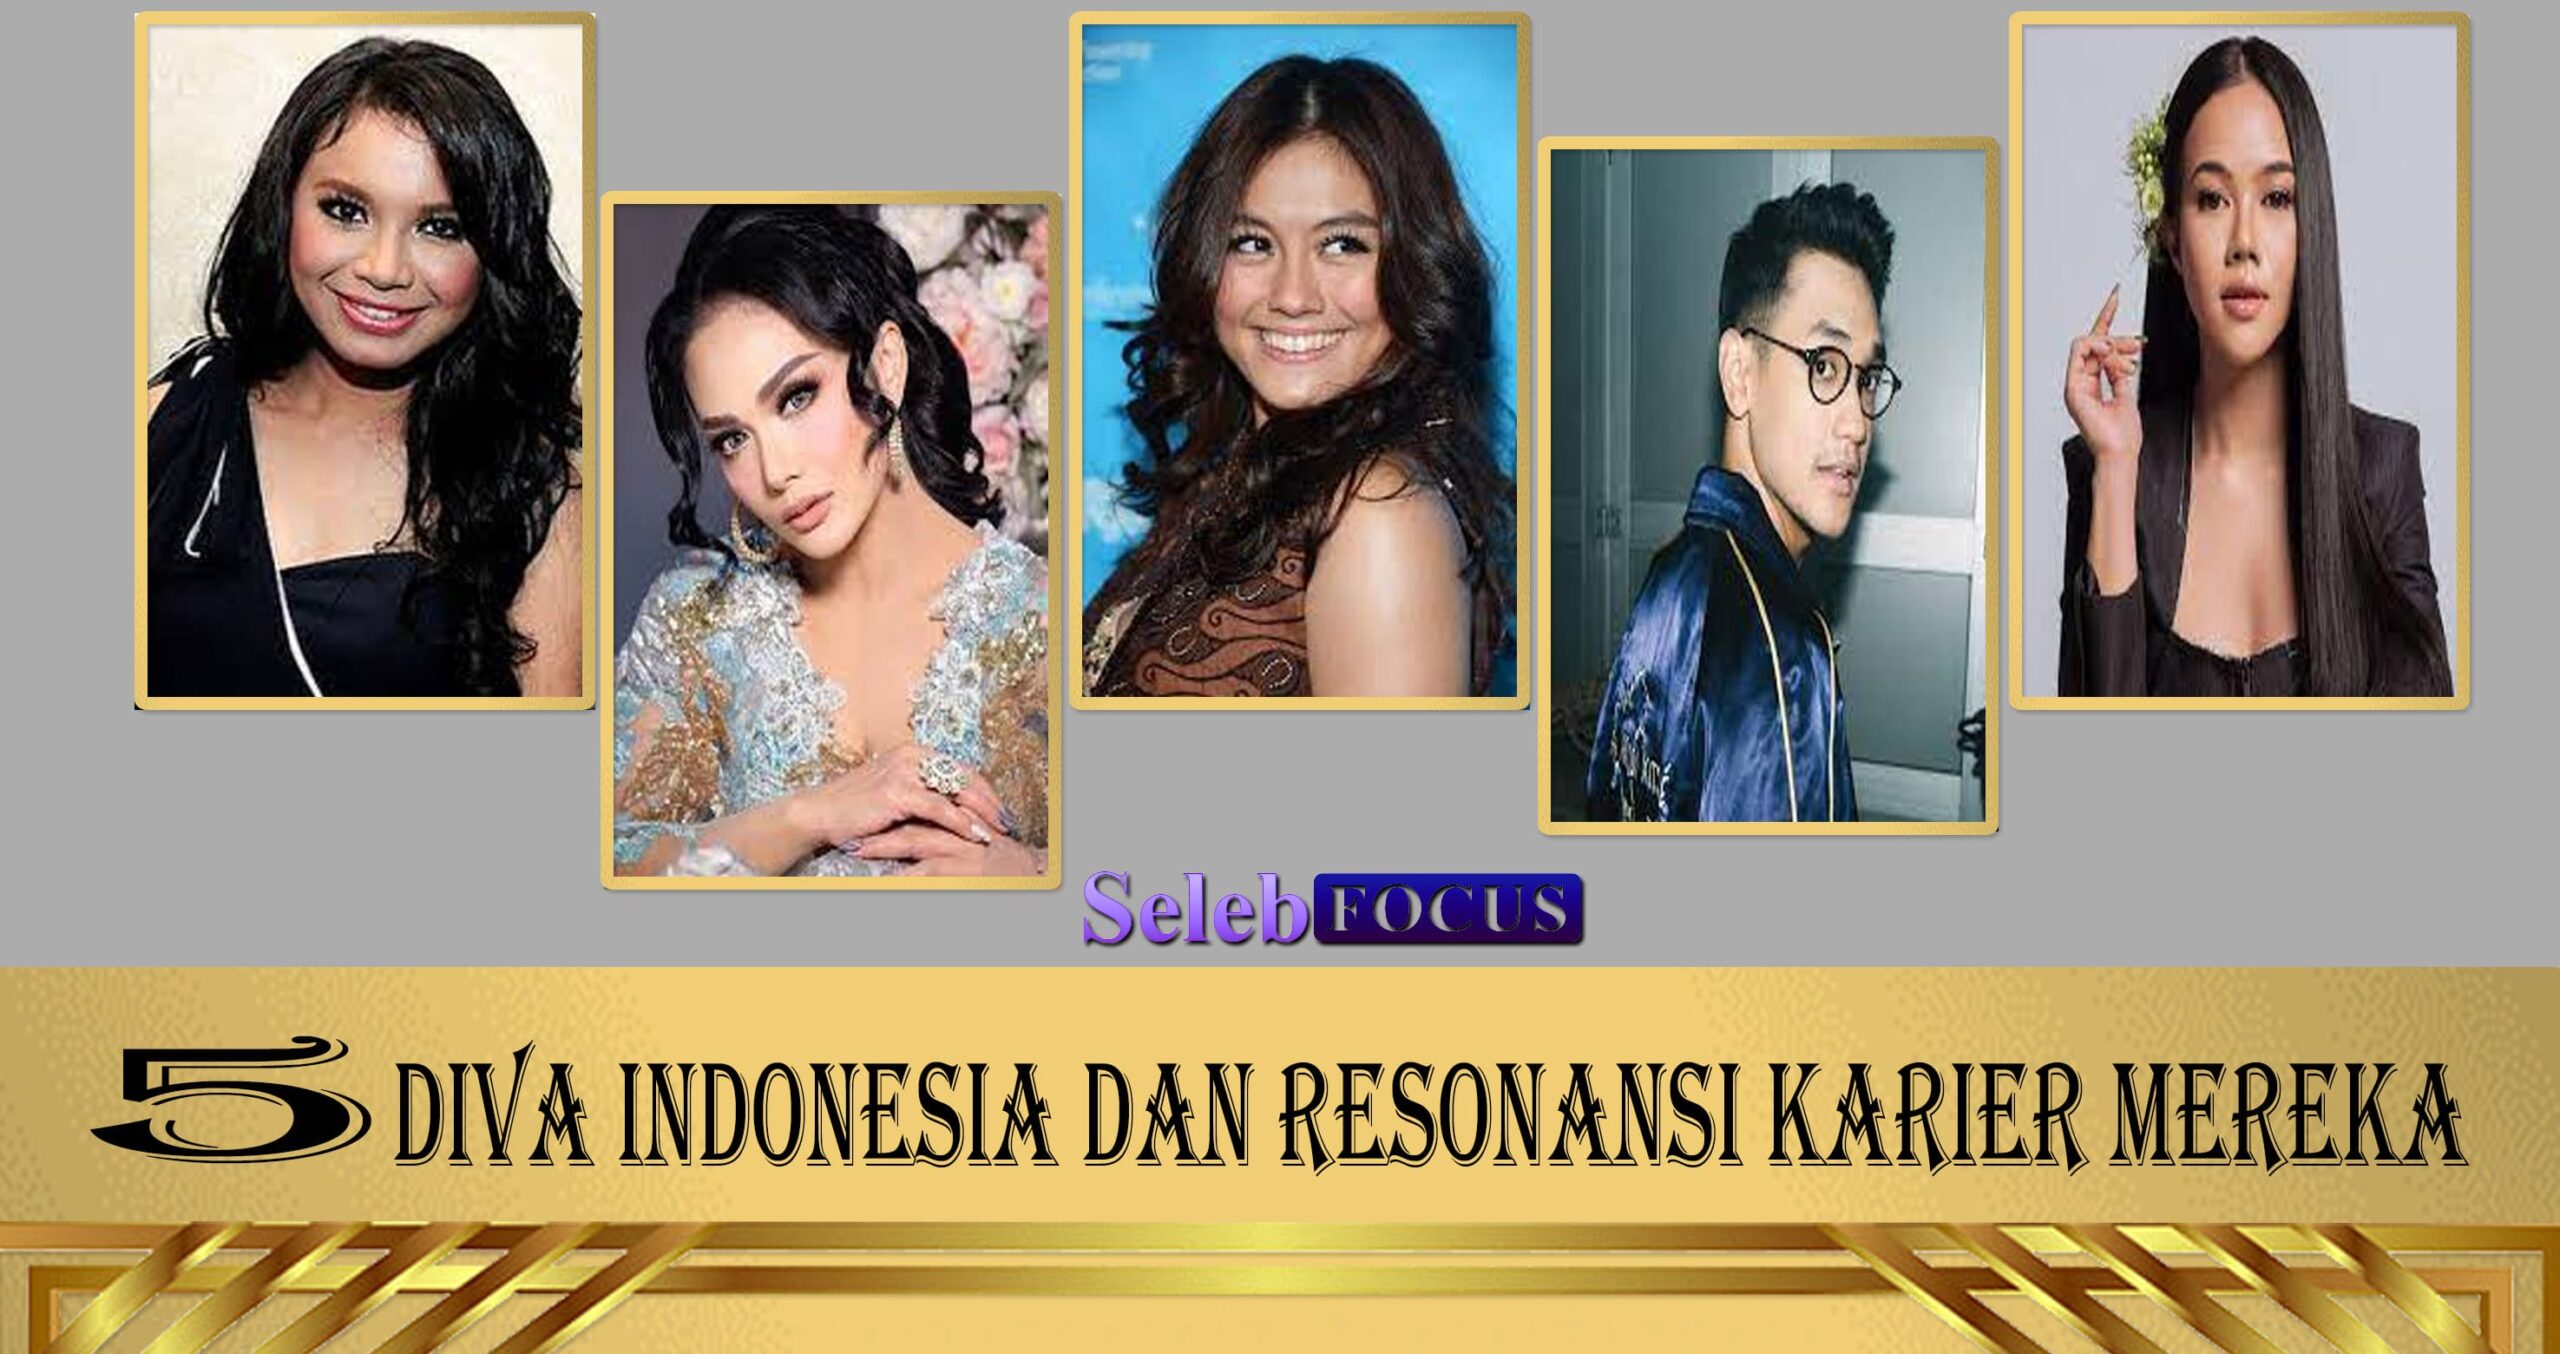 5 Diva Indonesia dan Resonansi Karier Mereka